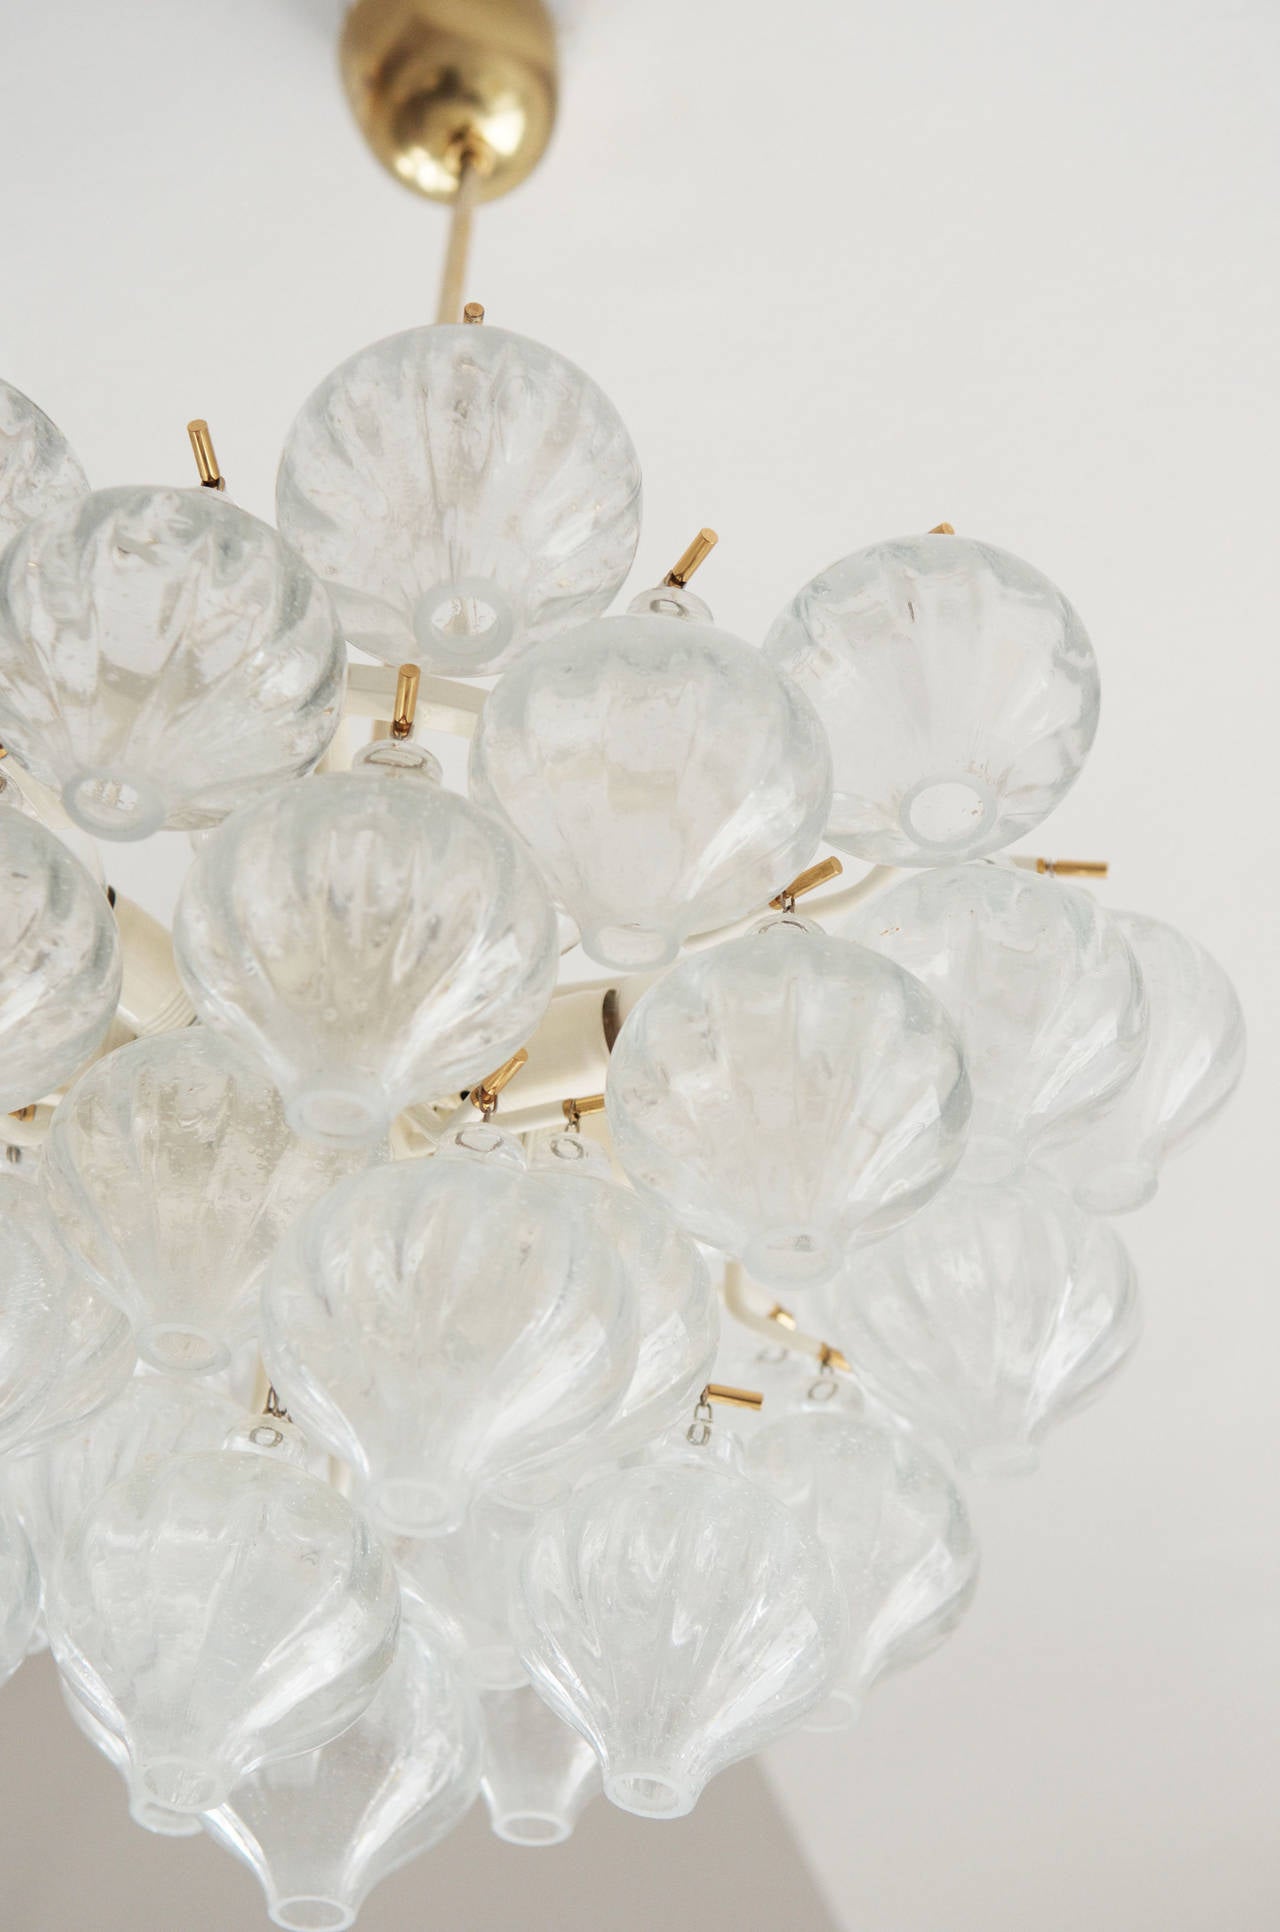 Lustre avec dix ampoules et 41 éléments en verre soufflé à la bouche réalisé par J.AT&T. Kalmar.
Très bon état avec des signes minimes d'âge, tels que la patine sur le laiton. Les ampoules en verre ne sont pas endommagées.
La longueur totale est